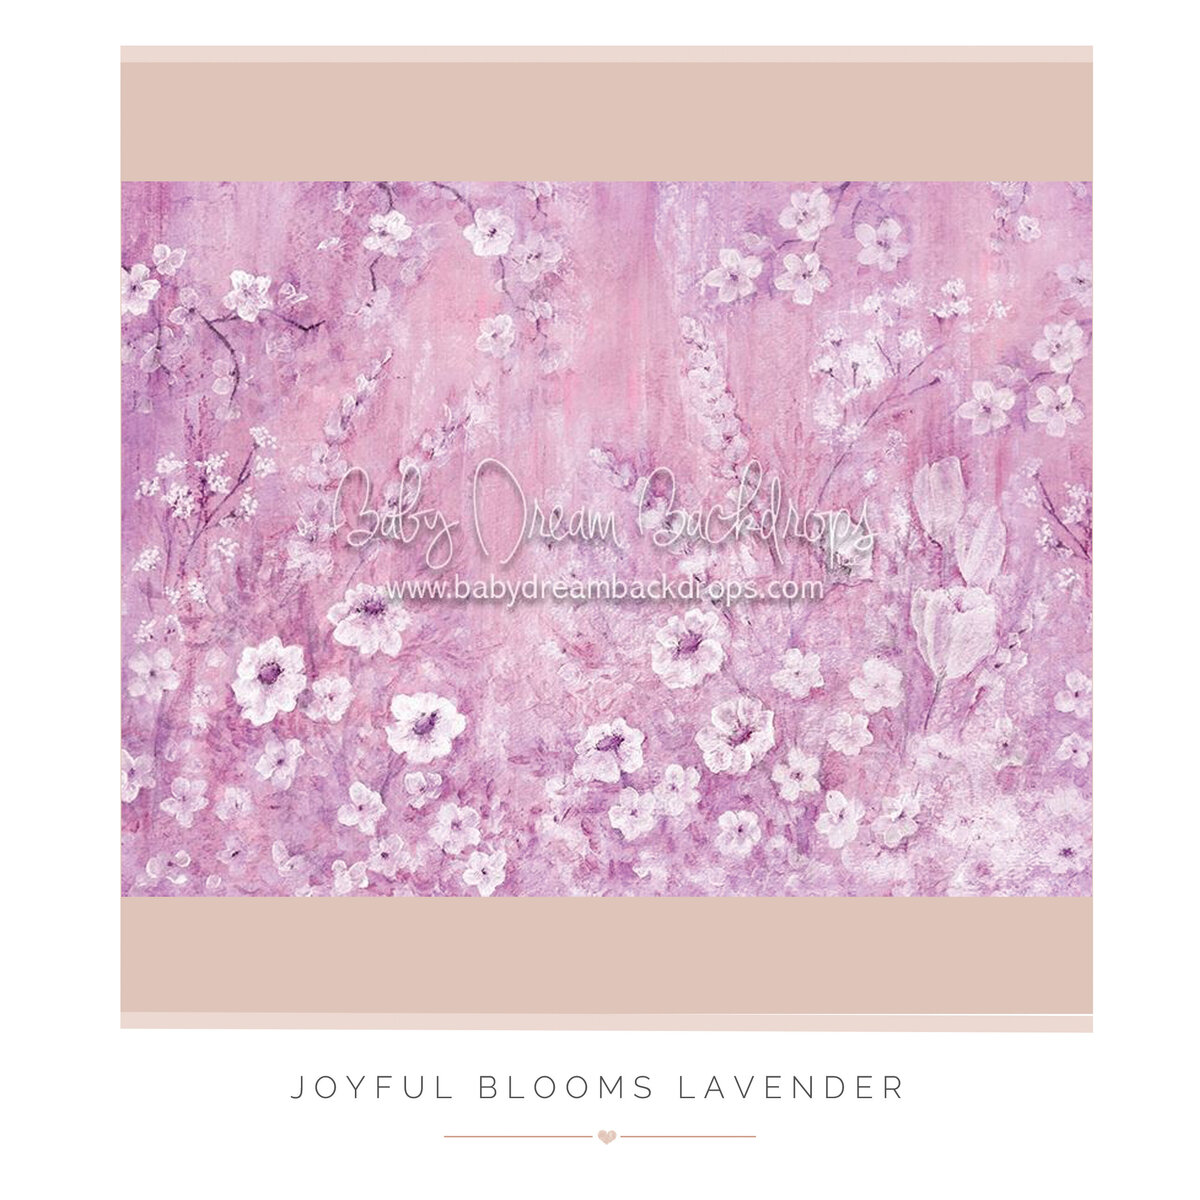 Joyful Blooms Lavender